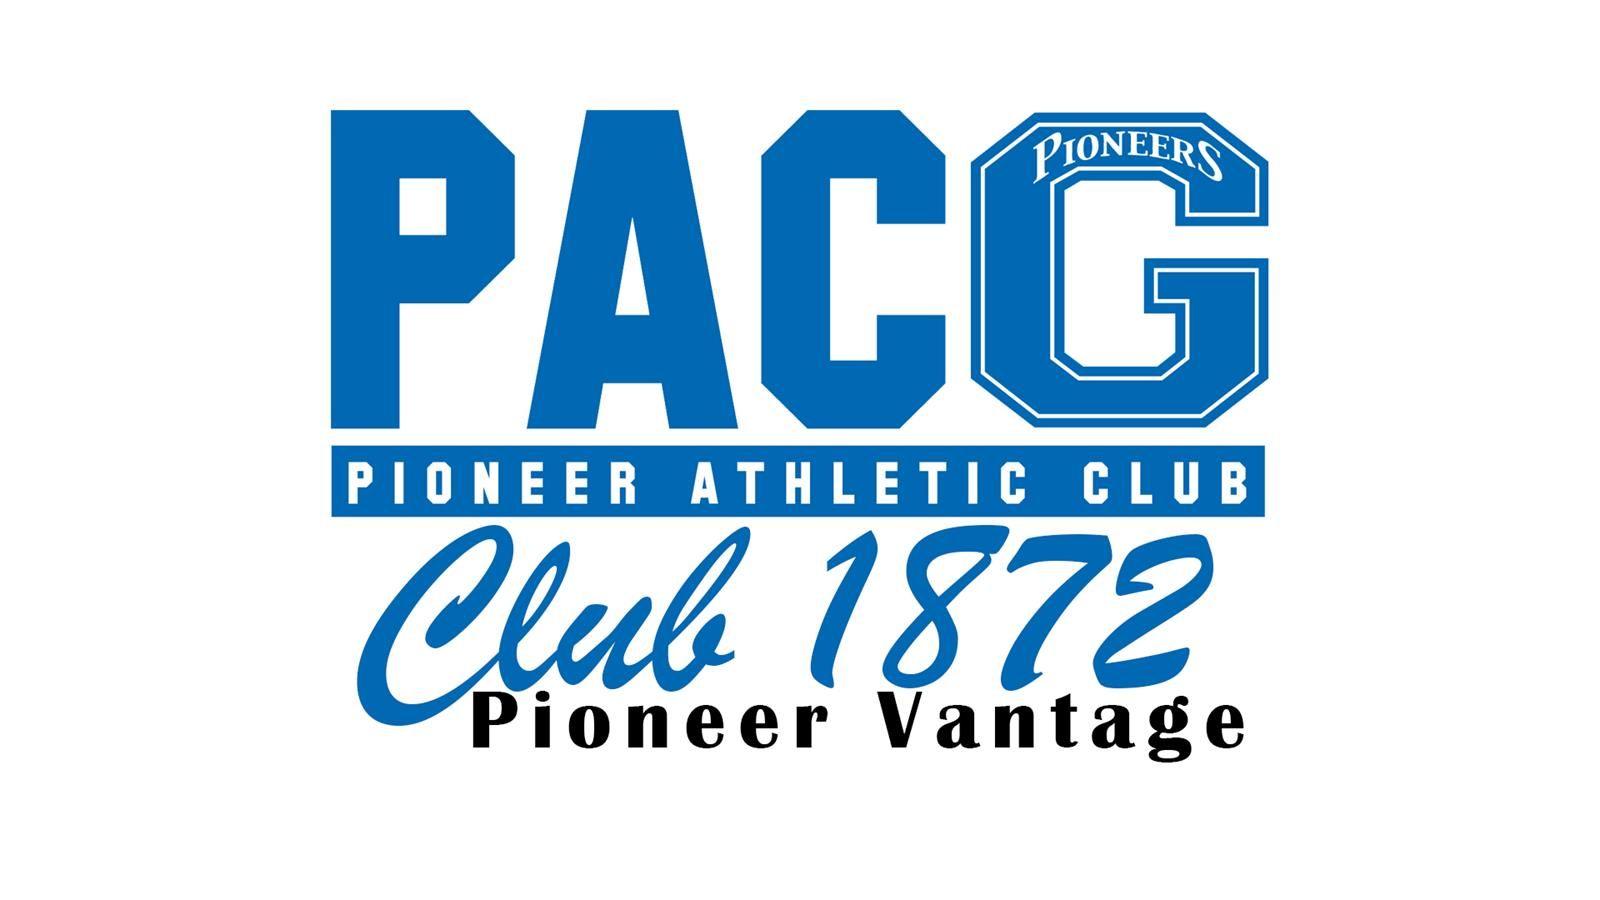 1872 Logo - Pioneer Athletic Club / Club 1872 / Pioneer Vantage